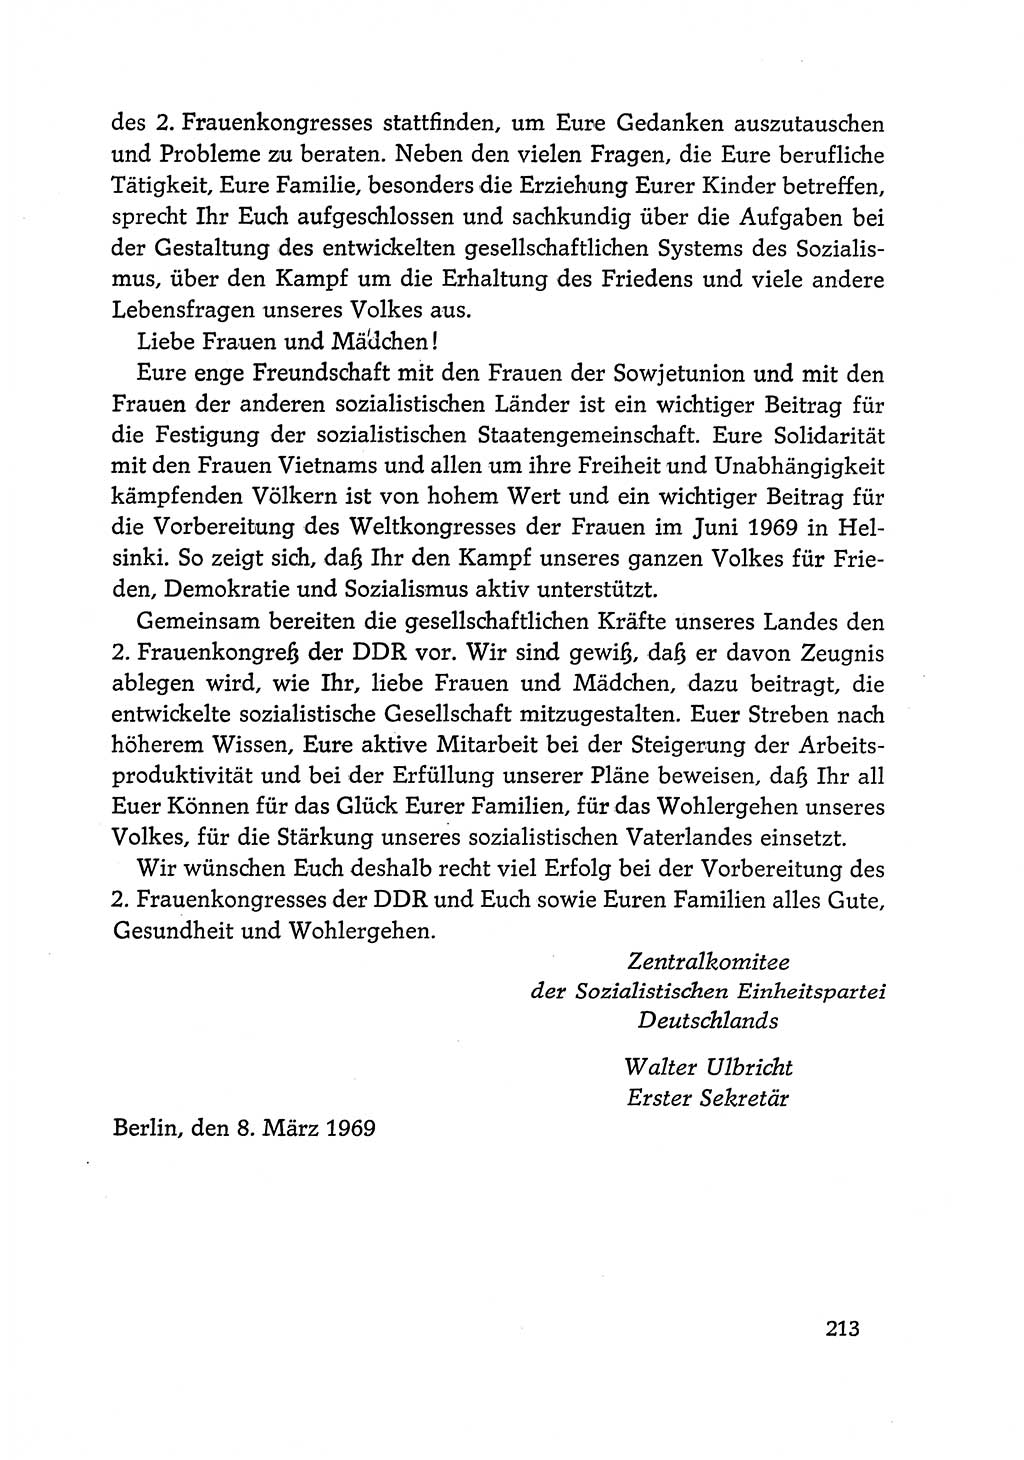 Dokumente der Sozialistischen Einheitspartei Deutschlands (SED) [Deutsche Demokratische Republik (DDR)] 1968-1969, Seite 213 (Dok. SED DDR 1968-1969, S. 213)